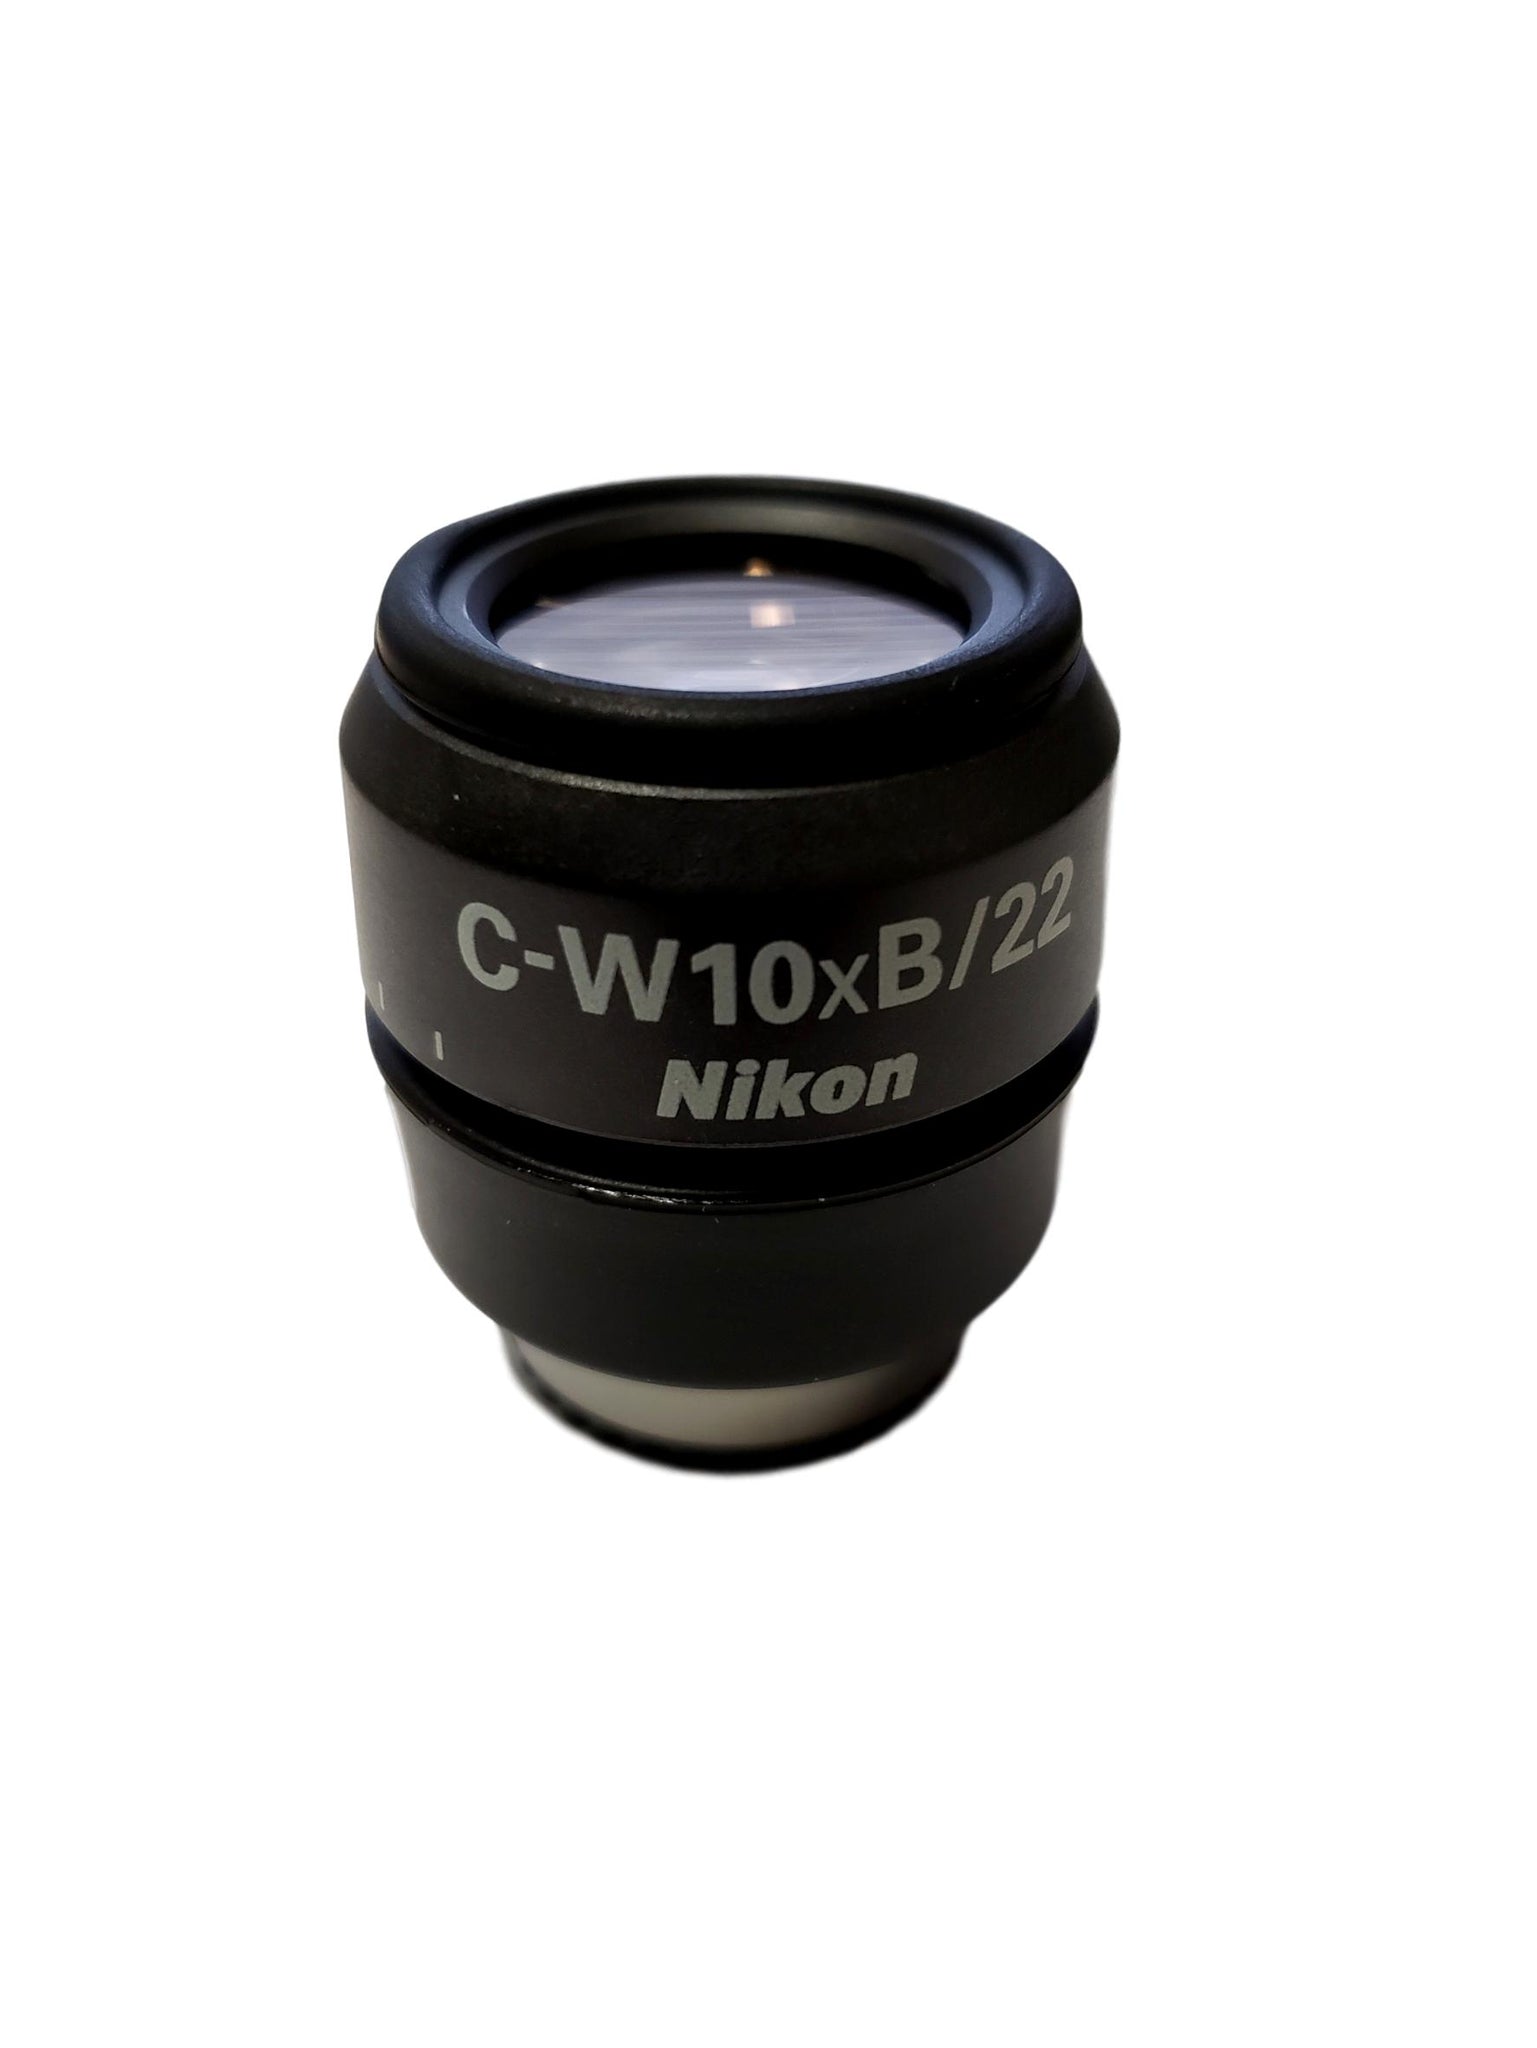 Nikon C-W10xB/22 Stereo Microscope Eyepiece MMK30102